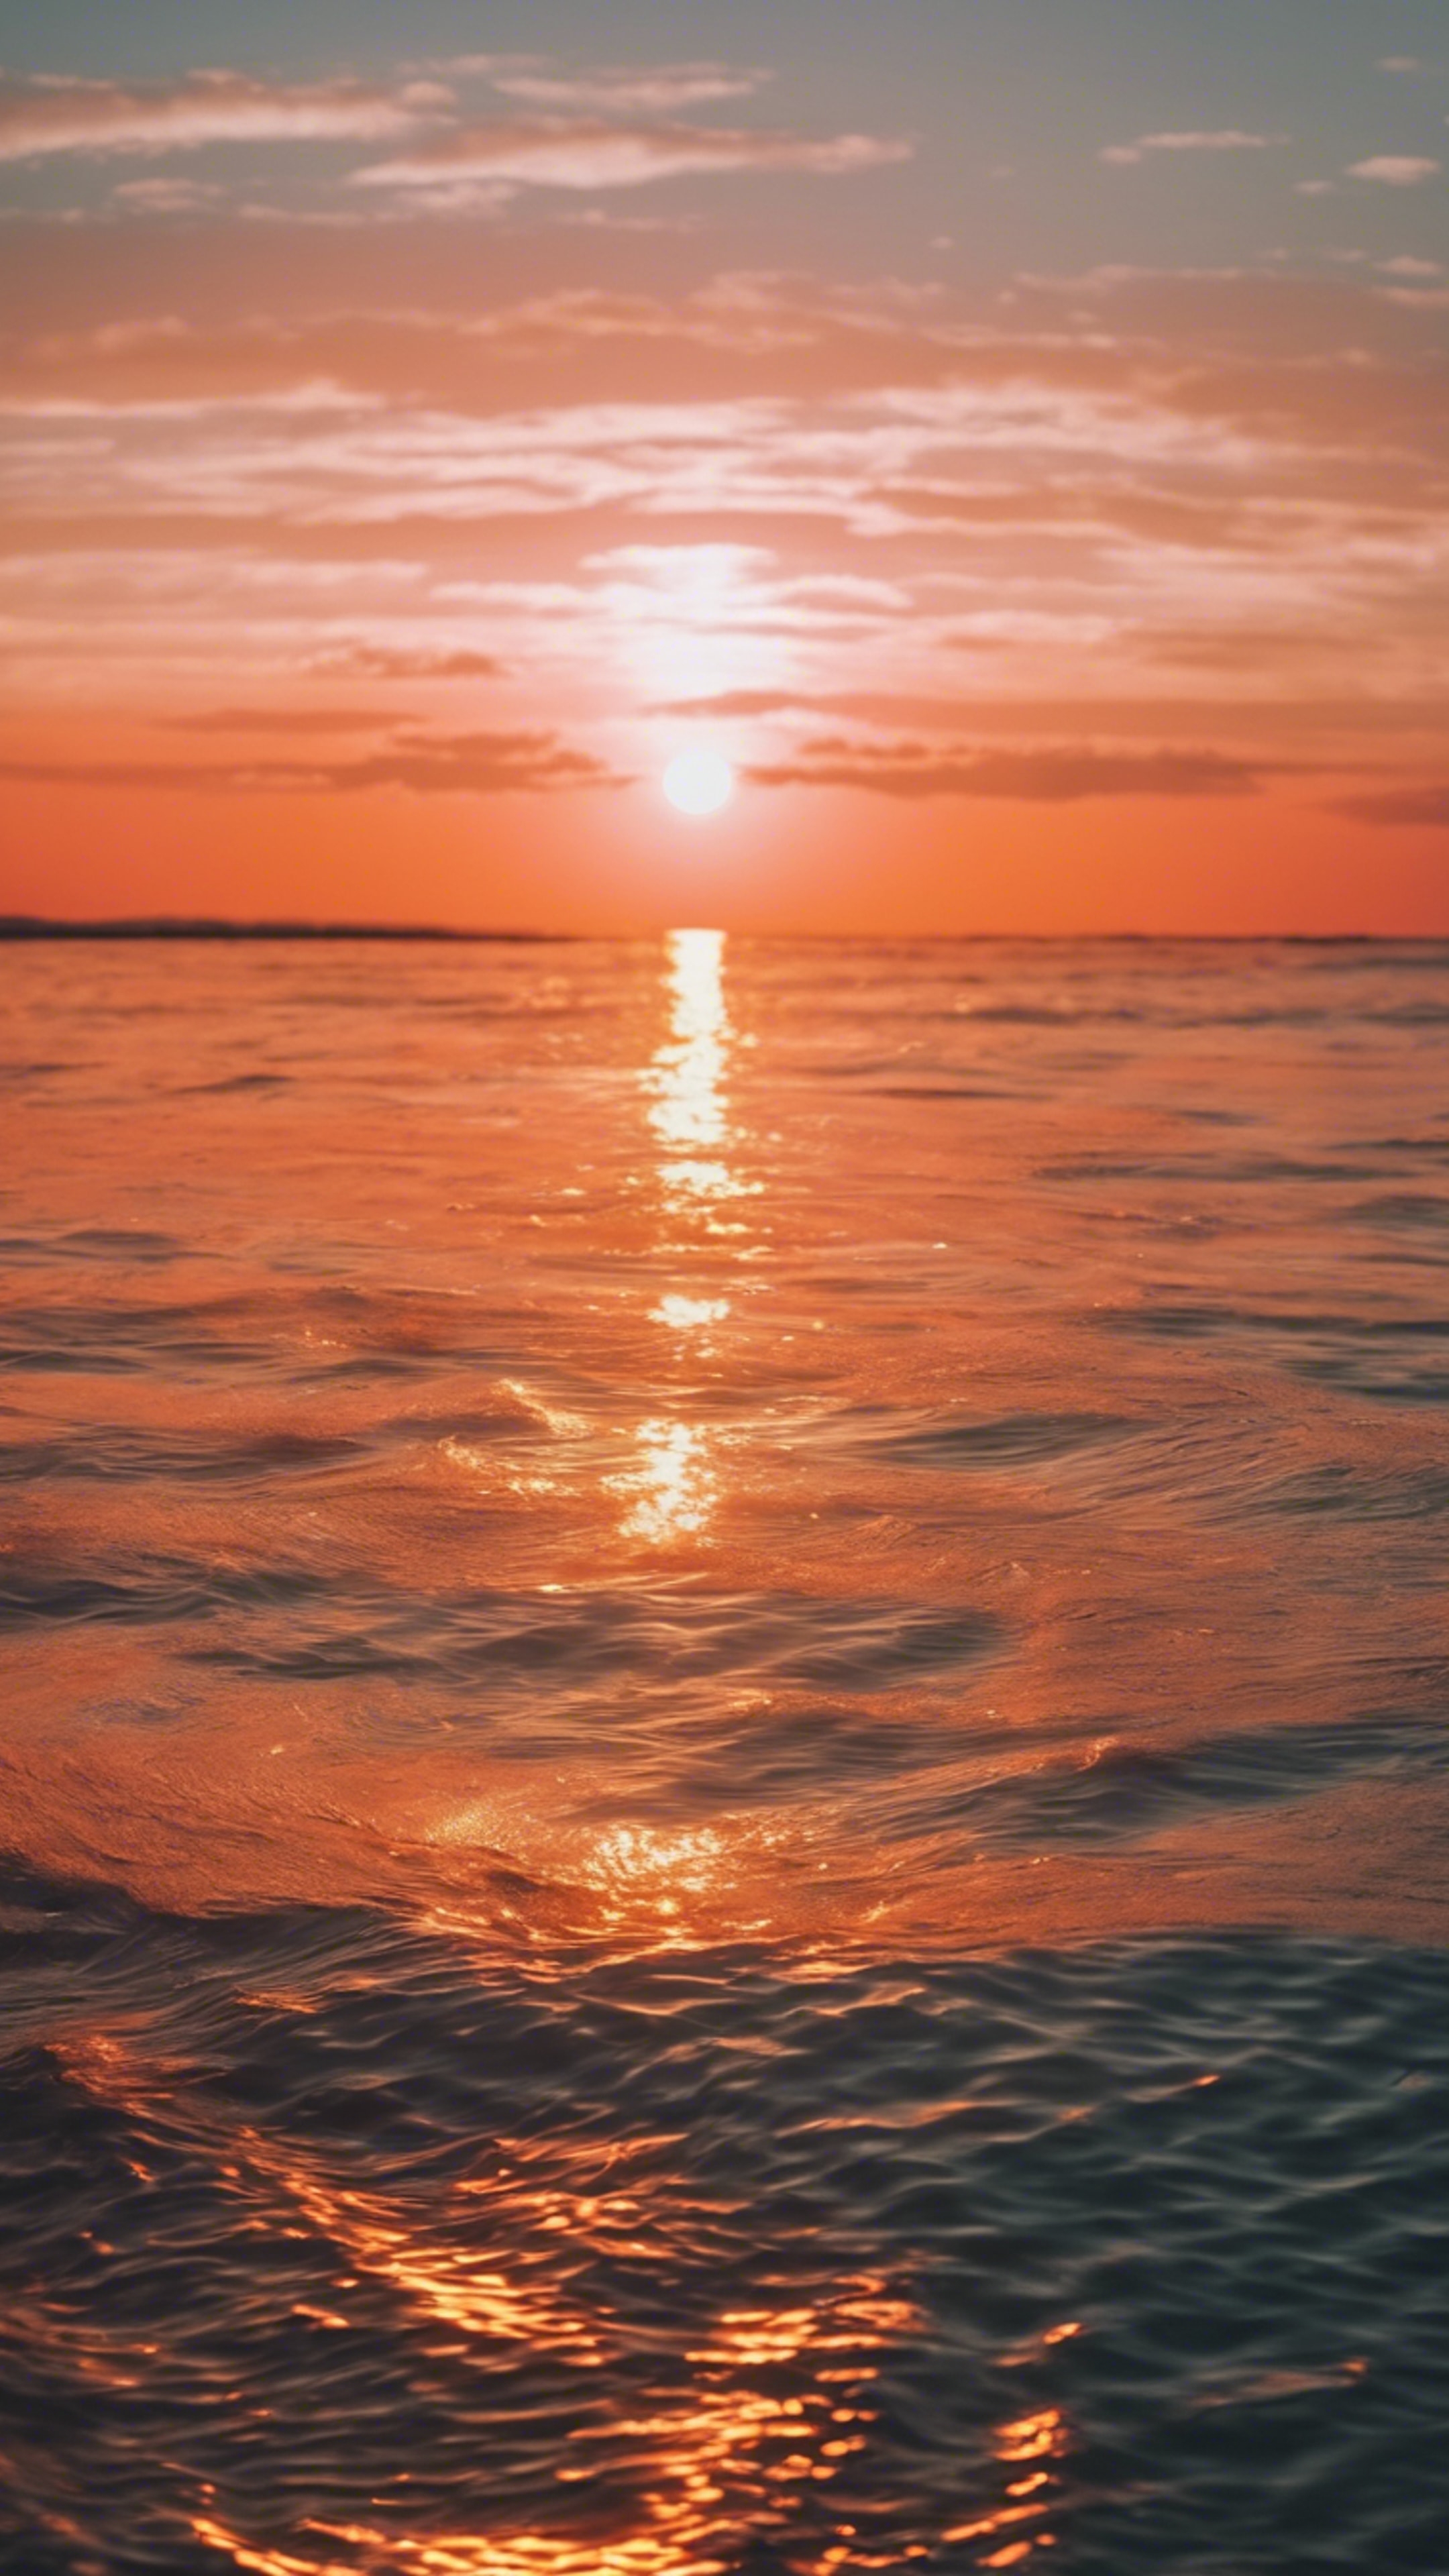 Bright neon orange sun setting over a calm sea. Hintergrund[6f90c626ce0243a7b617]